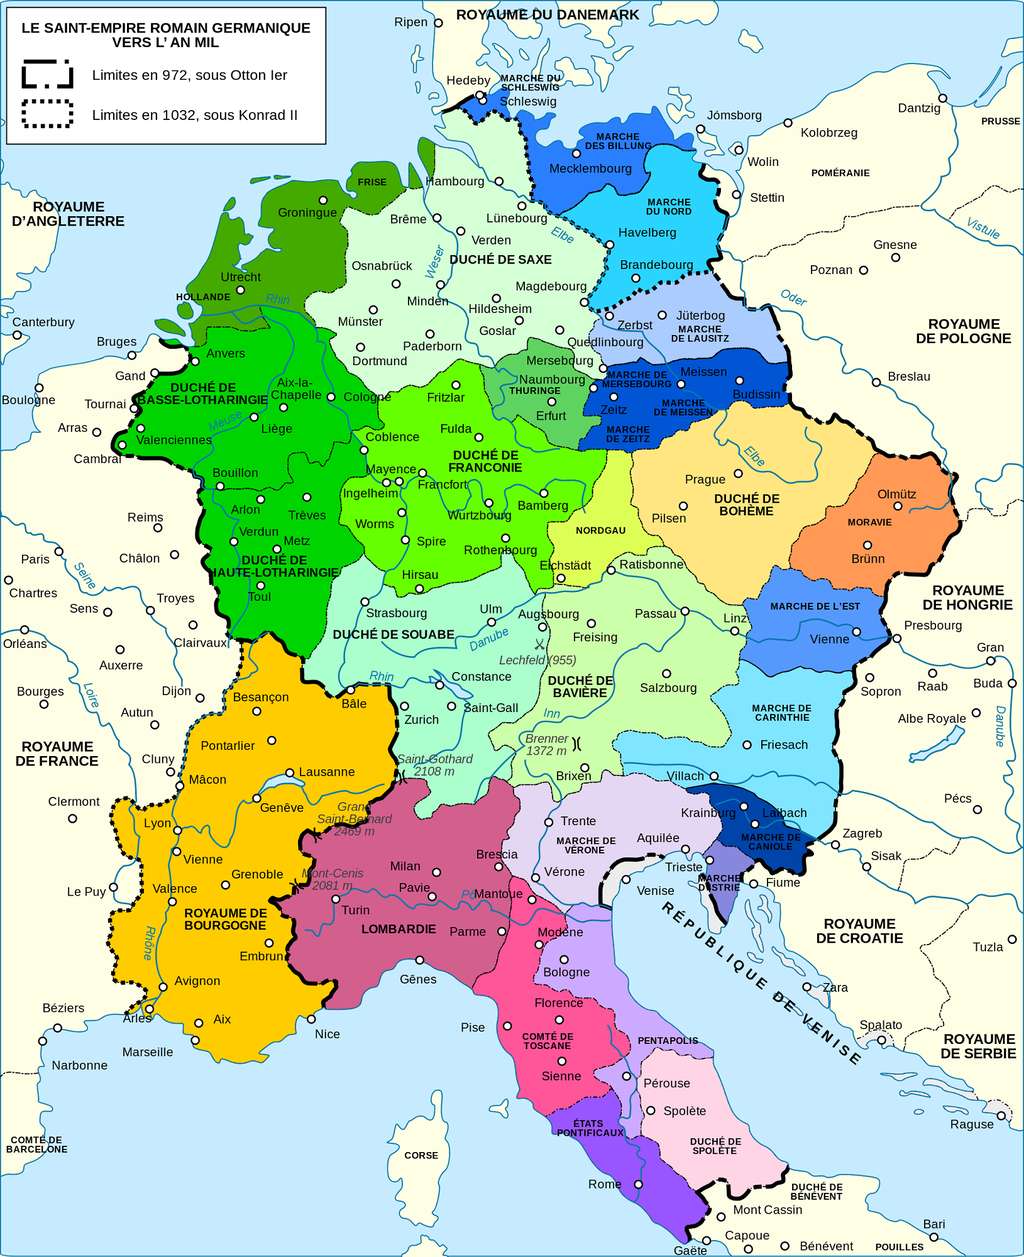 Carte du Saint Empire germanique vers l'an mil. Auteur : Semhur, 2011. © Wikimedia Commons, domaine public